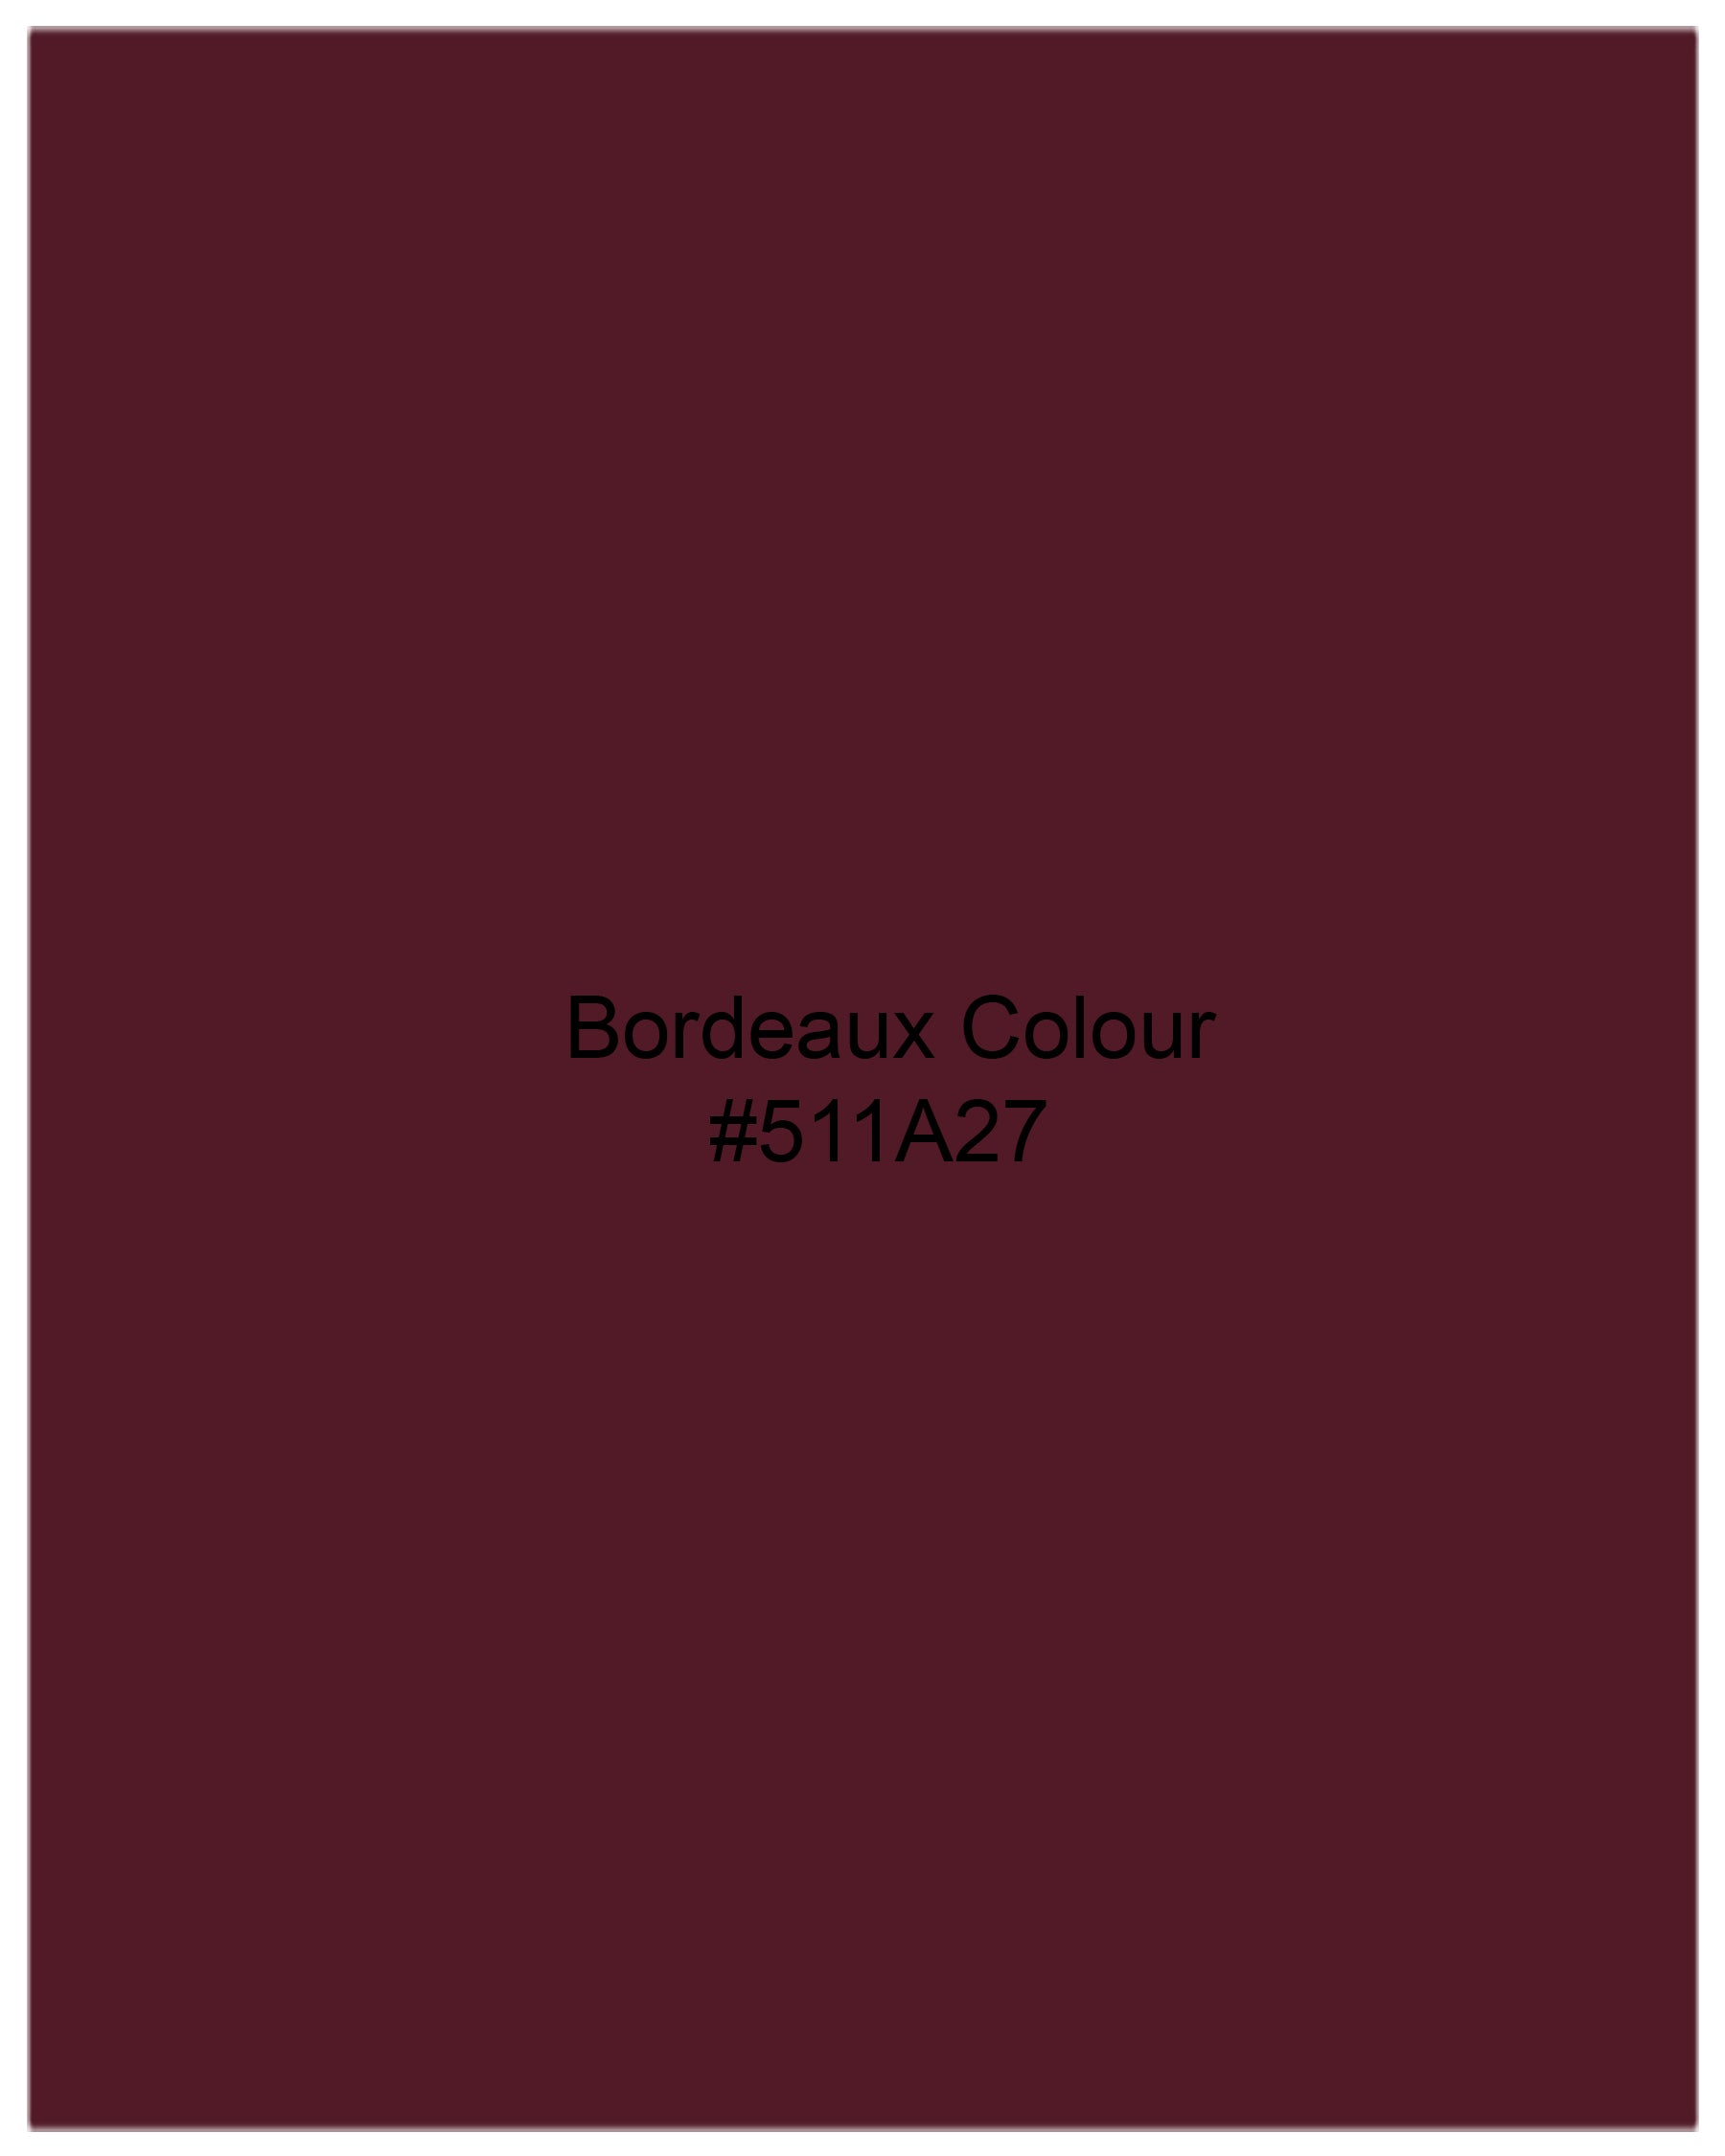 Bordeaux Maroon Premium Tencel Shirt 7940-BD-38,7940-BD-H-38,7940-BD-39,7940-BD-H-39,7940-BD-40,7940-BD-H-40,7940-BD-42,7940-BD-H-42,7940-BD-44,7940-BD-H-44,7940-BD-46,7940-BD-H-46,7940-BD-48,7940-BD-H-48,7940-BD-50,7940-BD-H-50,7940-BD-52,7940-BD-H-52